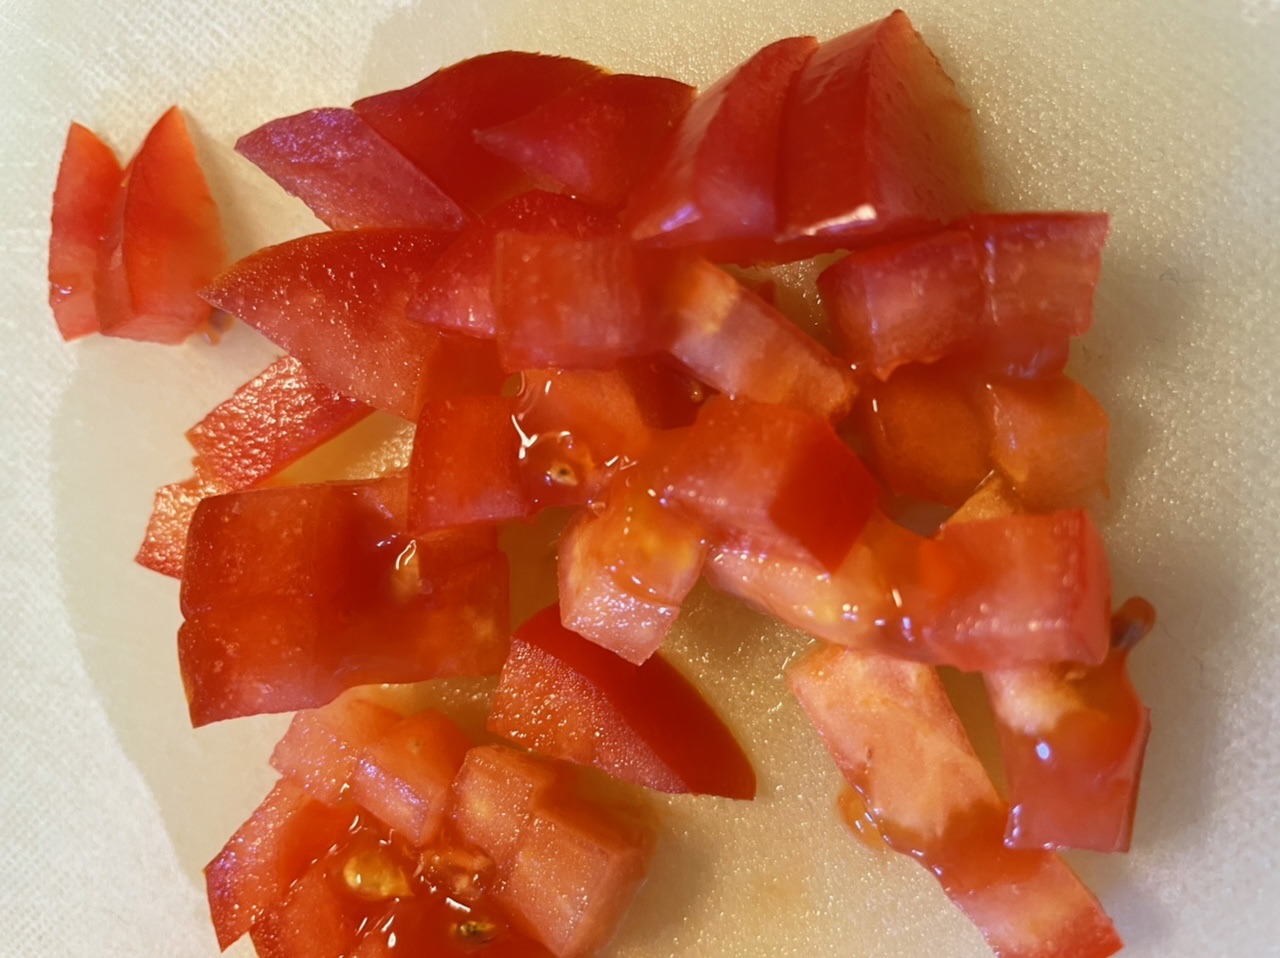 Bild zum Schritt 4 für das Bastel- und DIY-Abenteuer für Kinder: 'Dann schneidet ihr eine Tomate in kleine Würfel.'